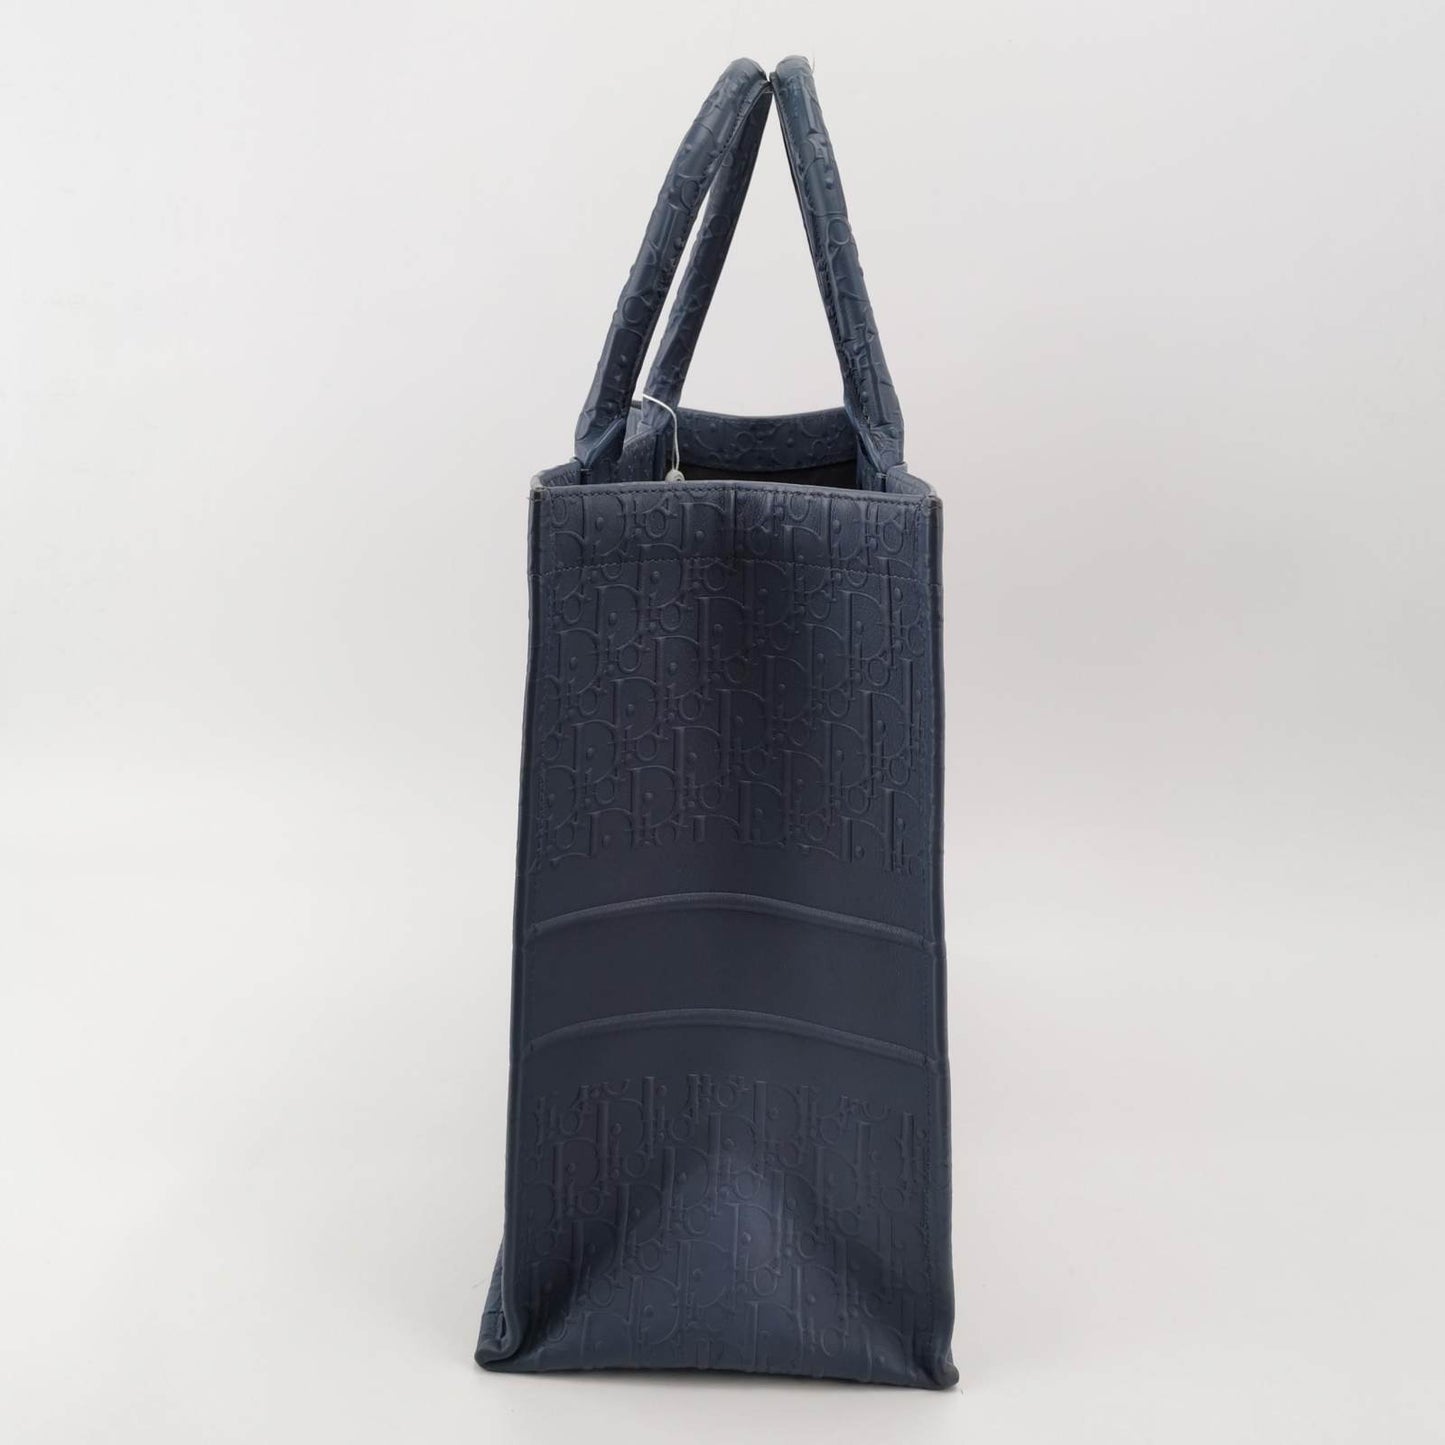 Christian Dior Book Tote Large Blue Calfskin Leather Oblique Embossed Handbag